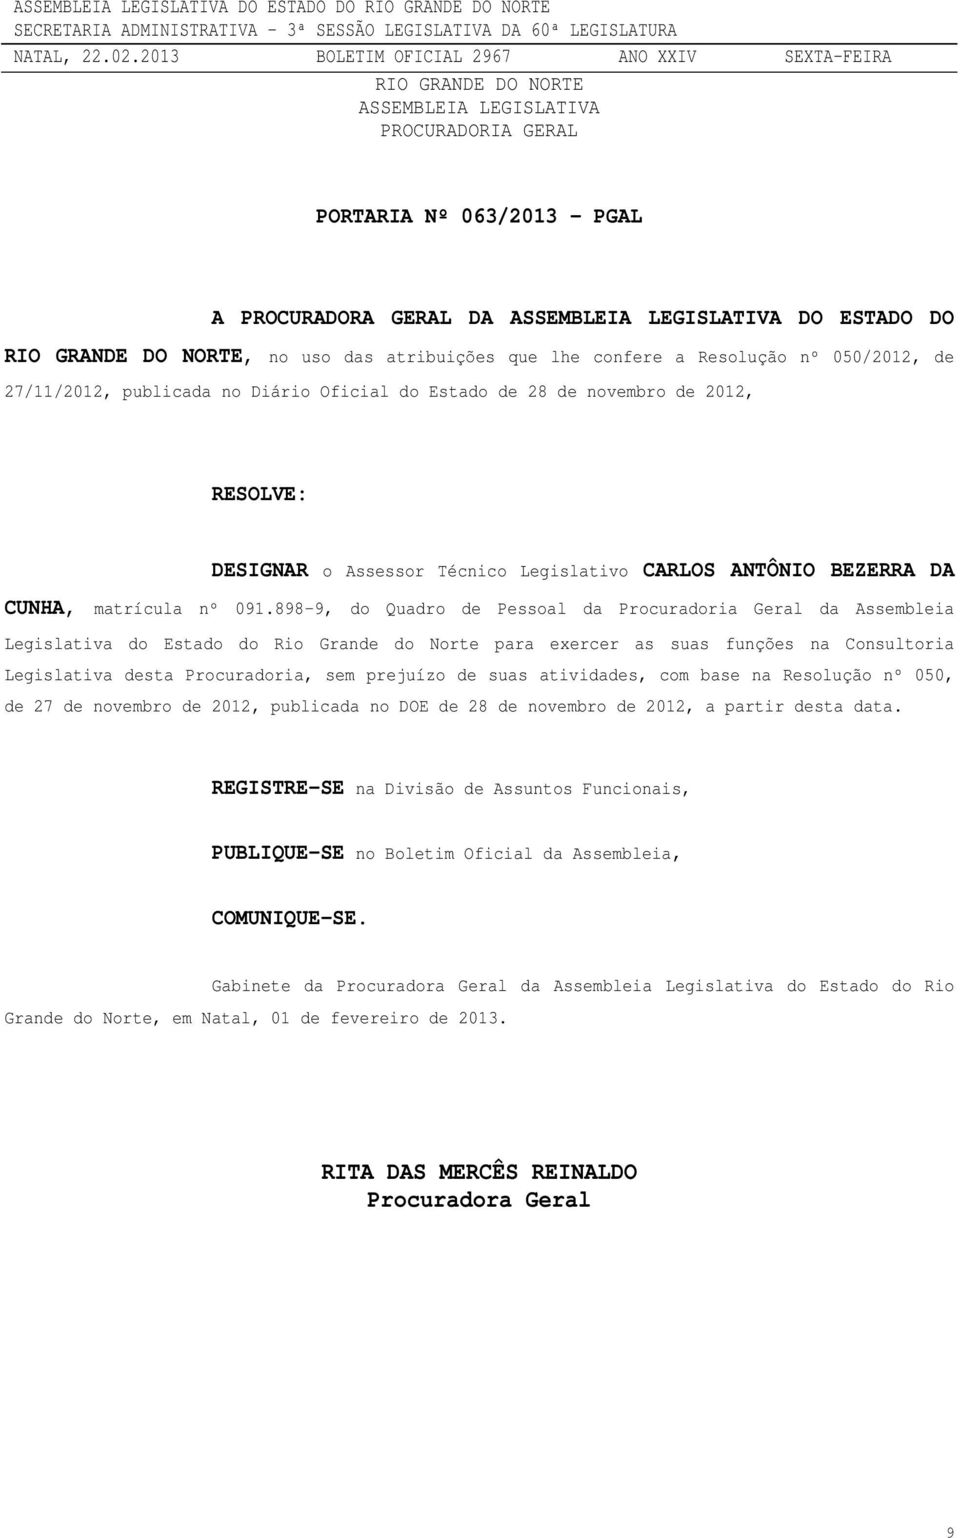 898-9, do Quadro de Pessoal da Procuradoria Geral da Assembleia Legislativa do Estado do Rio Grande do Norte para exercer as suas funções na